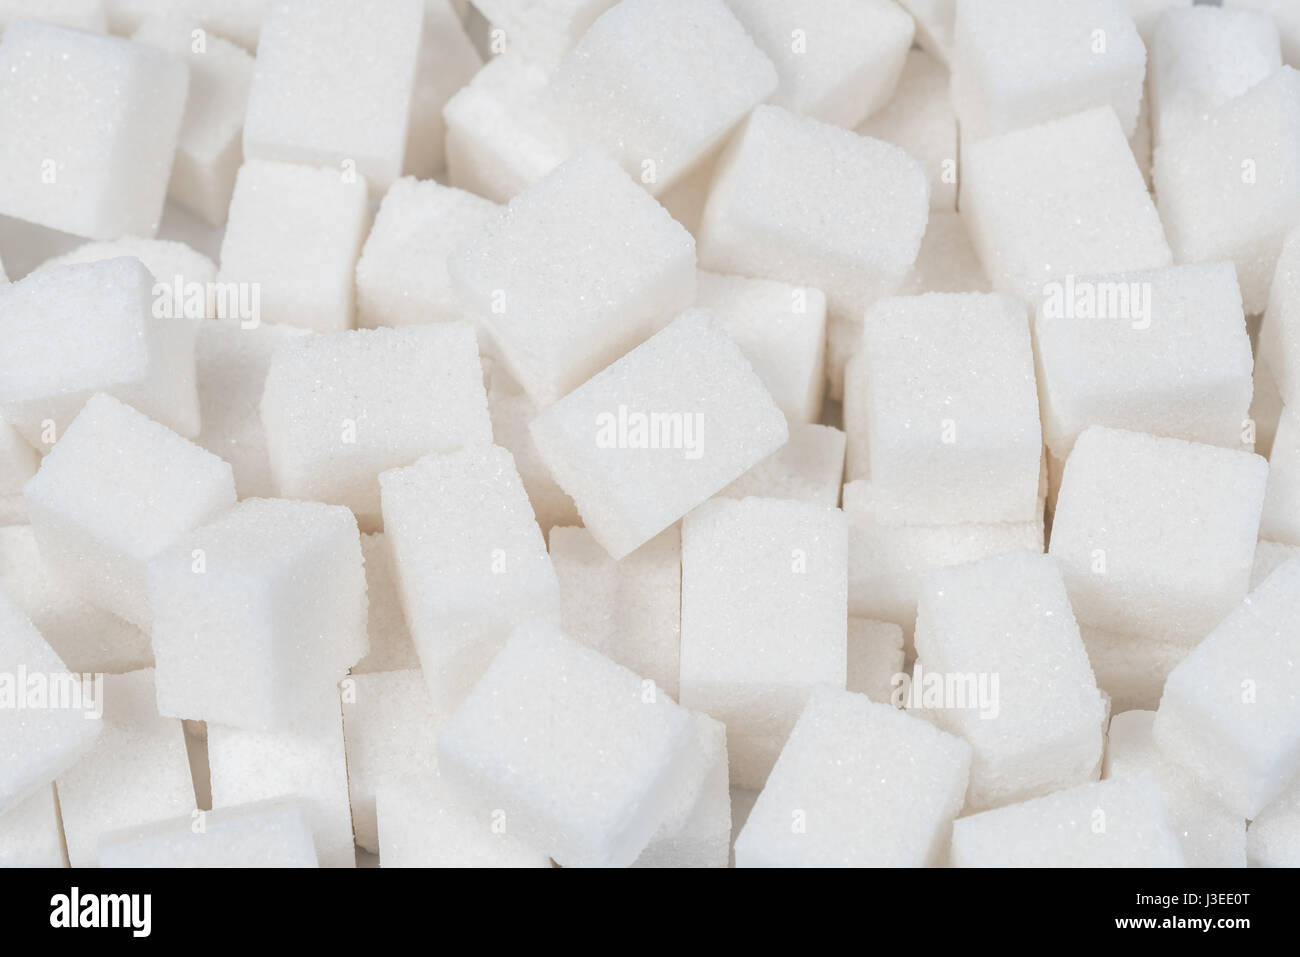 Azúcar dulce ingrediente alimentario de fondo con un primer plano de un montón de deliciosos protuberancias blancas de cubos como un símbolo de cocinar y hornear, y la dieta de los riesgos para la salud relacionados con la diabetes y el consumo de calorías. Foto de stock